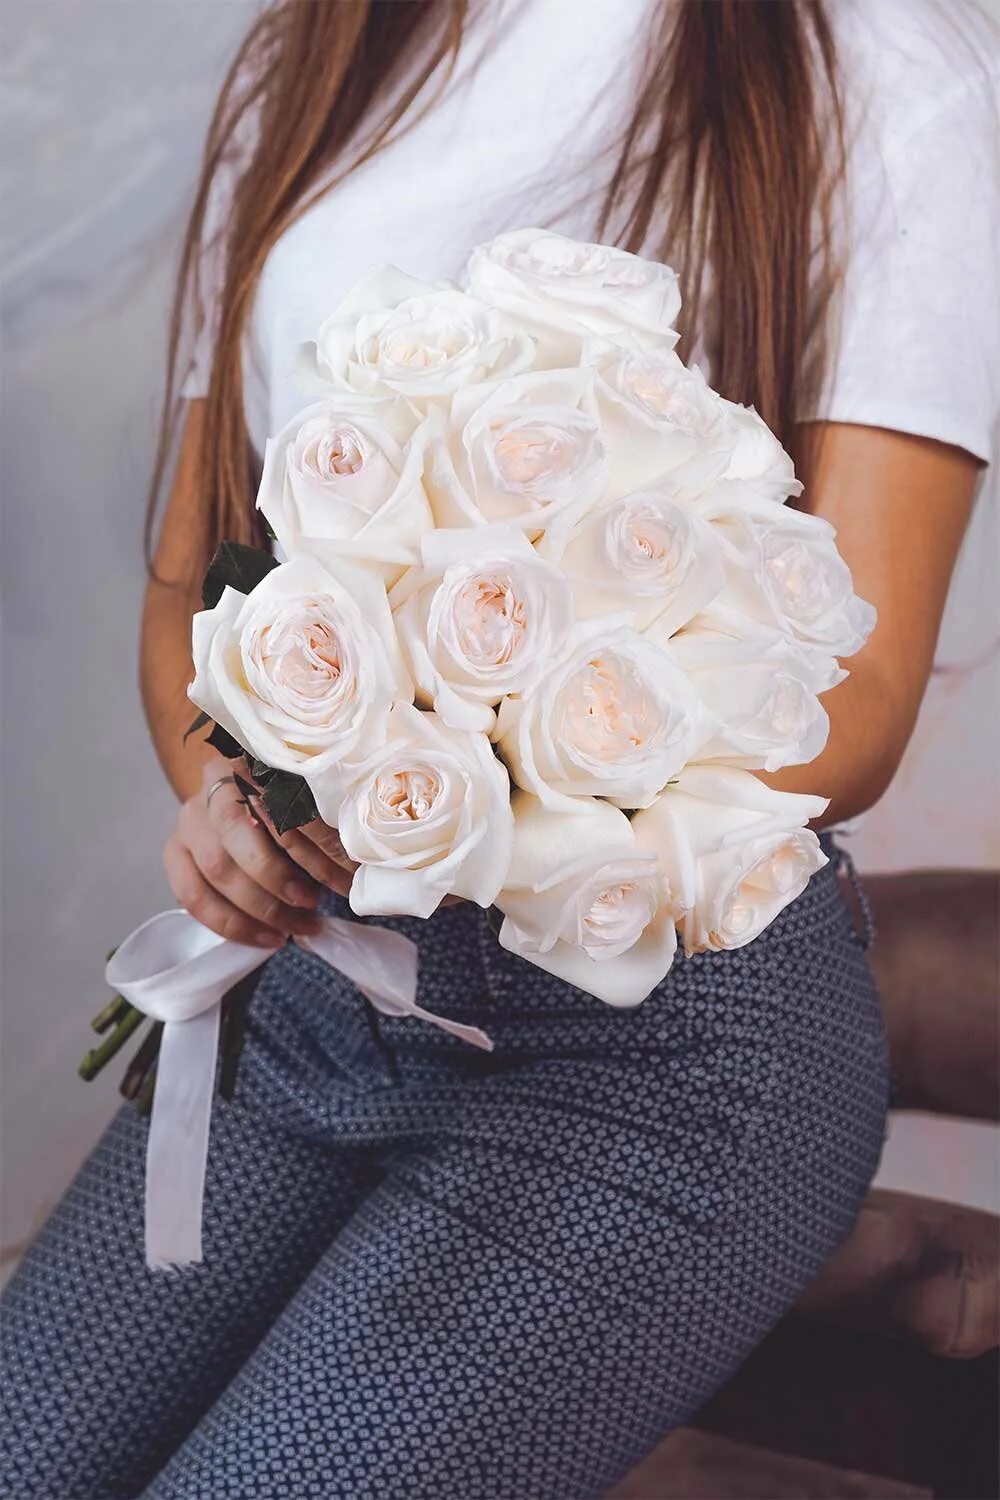 Девушка с белыми розами. Девушка с букетом роз. Букет "девушке". Девушка с букетом белых роз. Белые розы в руках